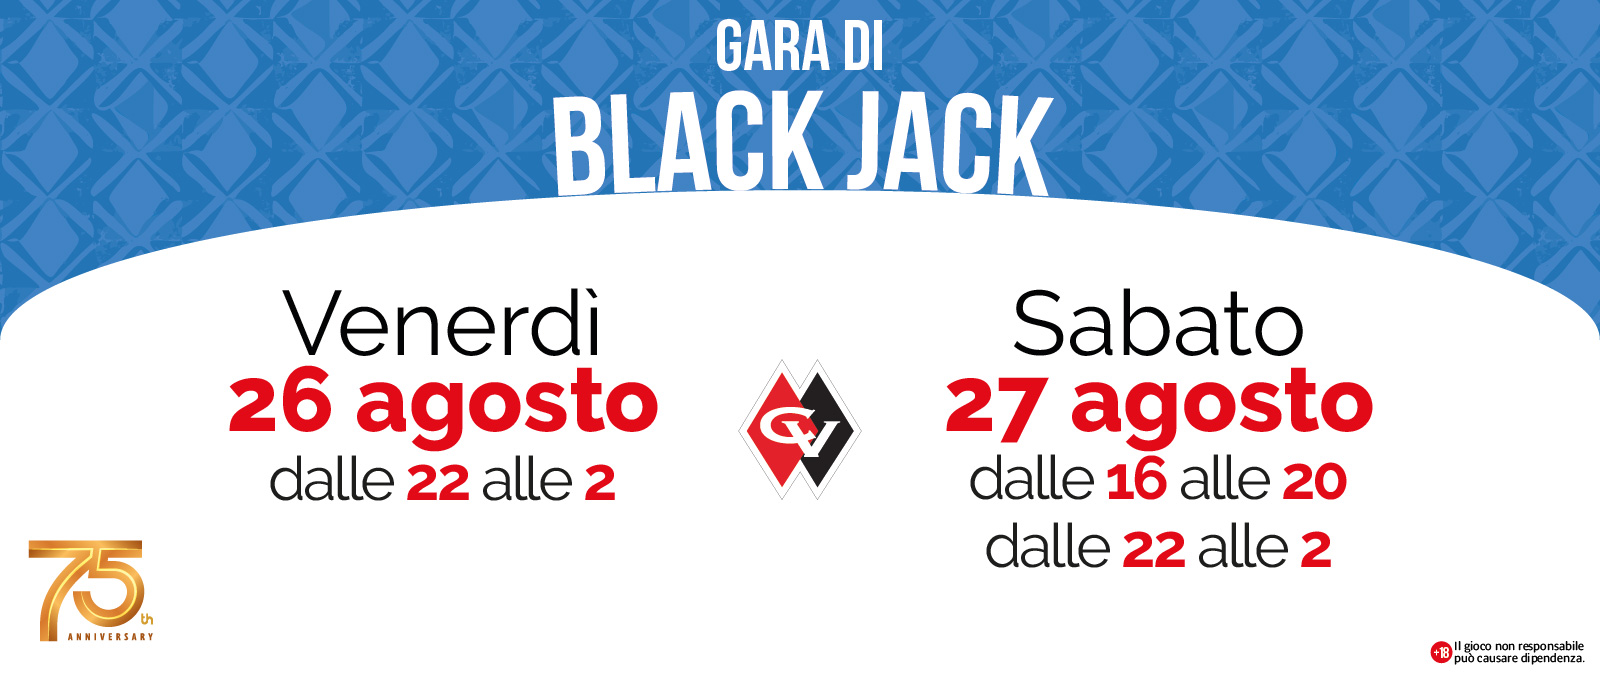 BLACK JACK